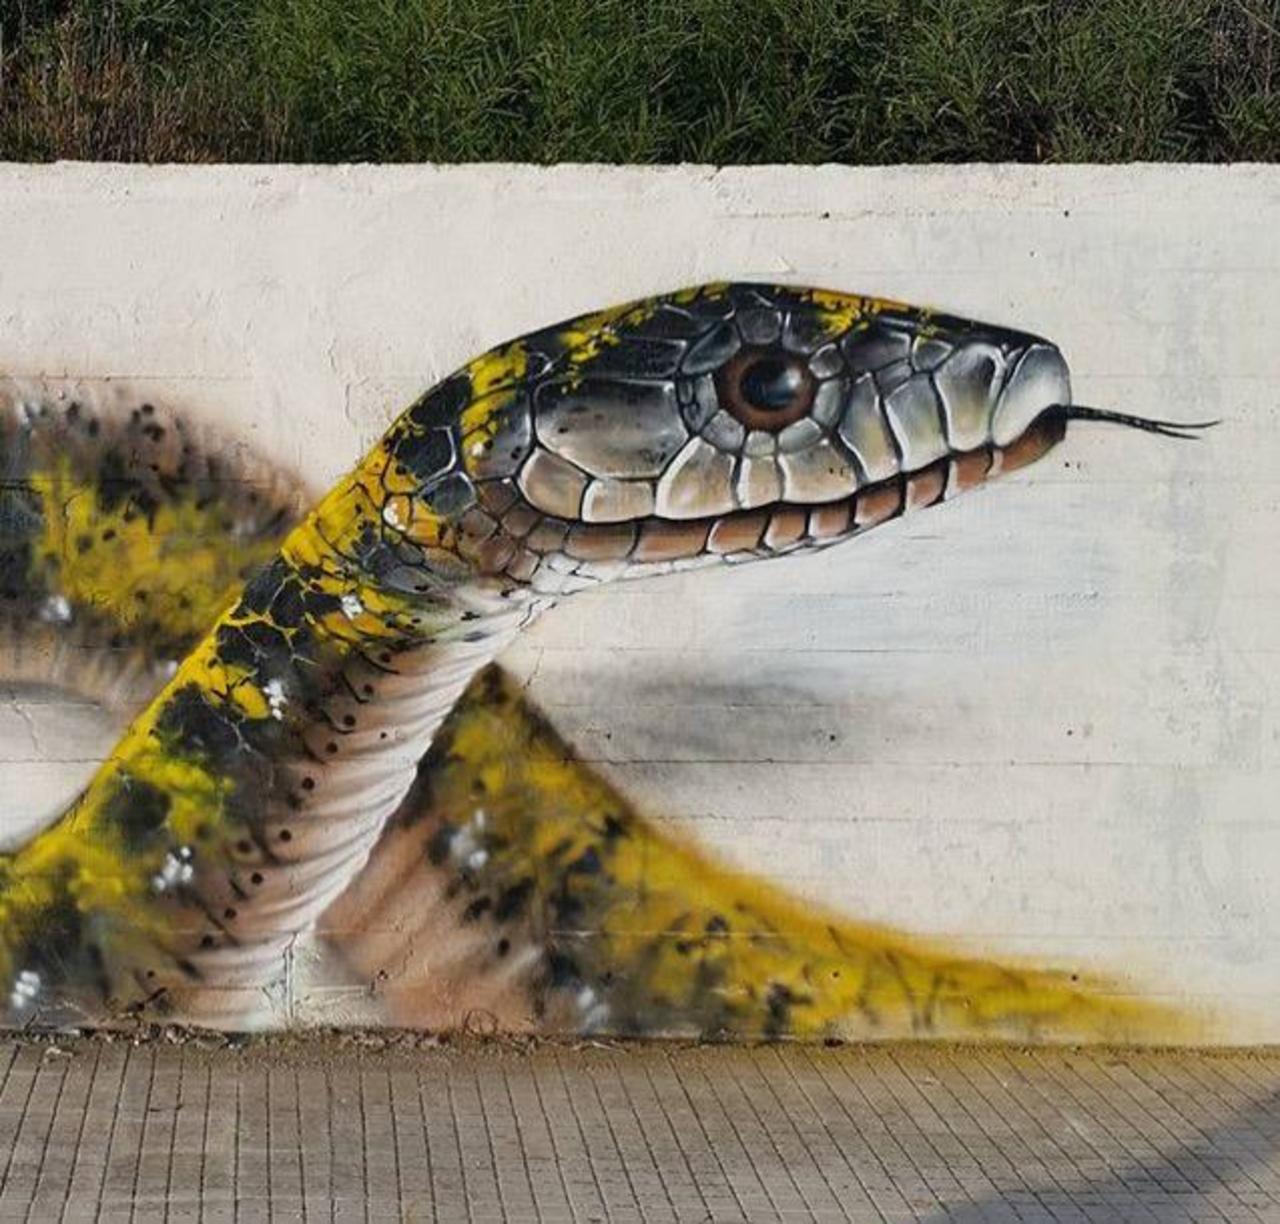 Street Art by Cosimocheone 

#art #graffiti #mural #streetart http://t.co/0HsRAbjy9d